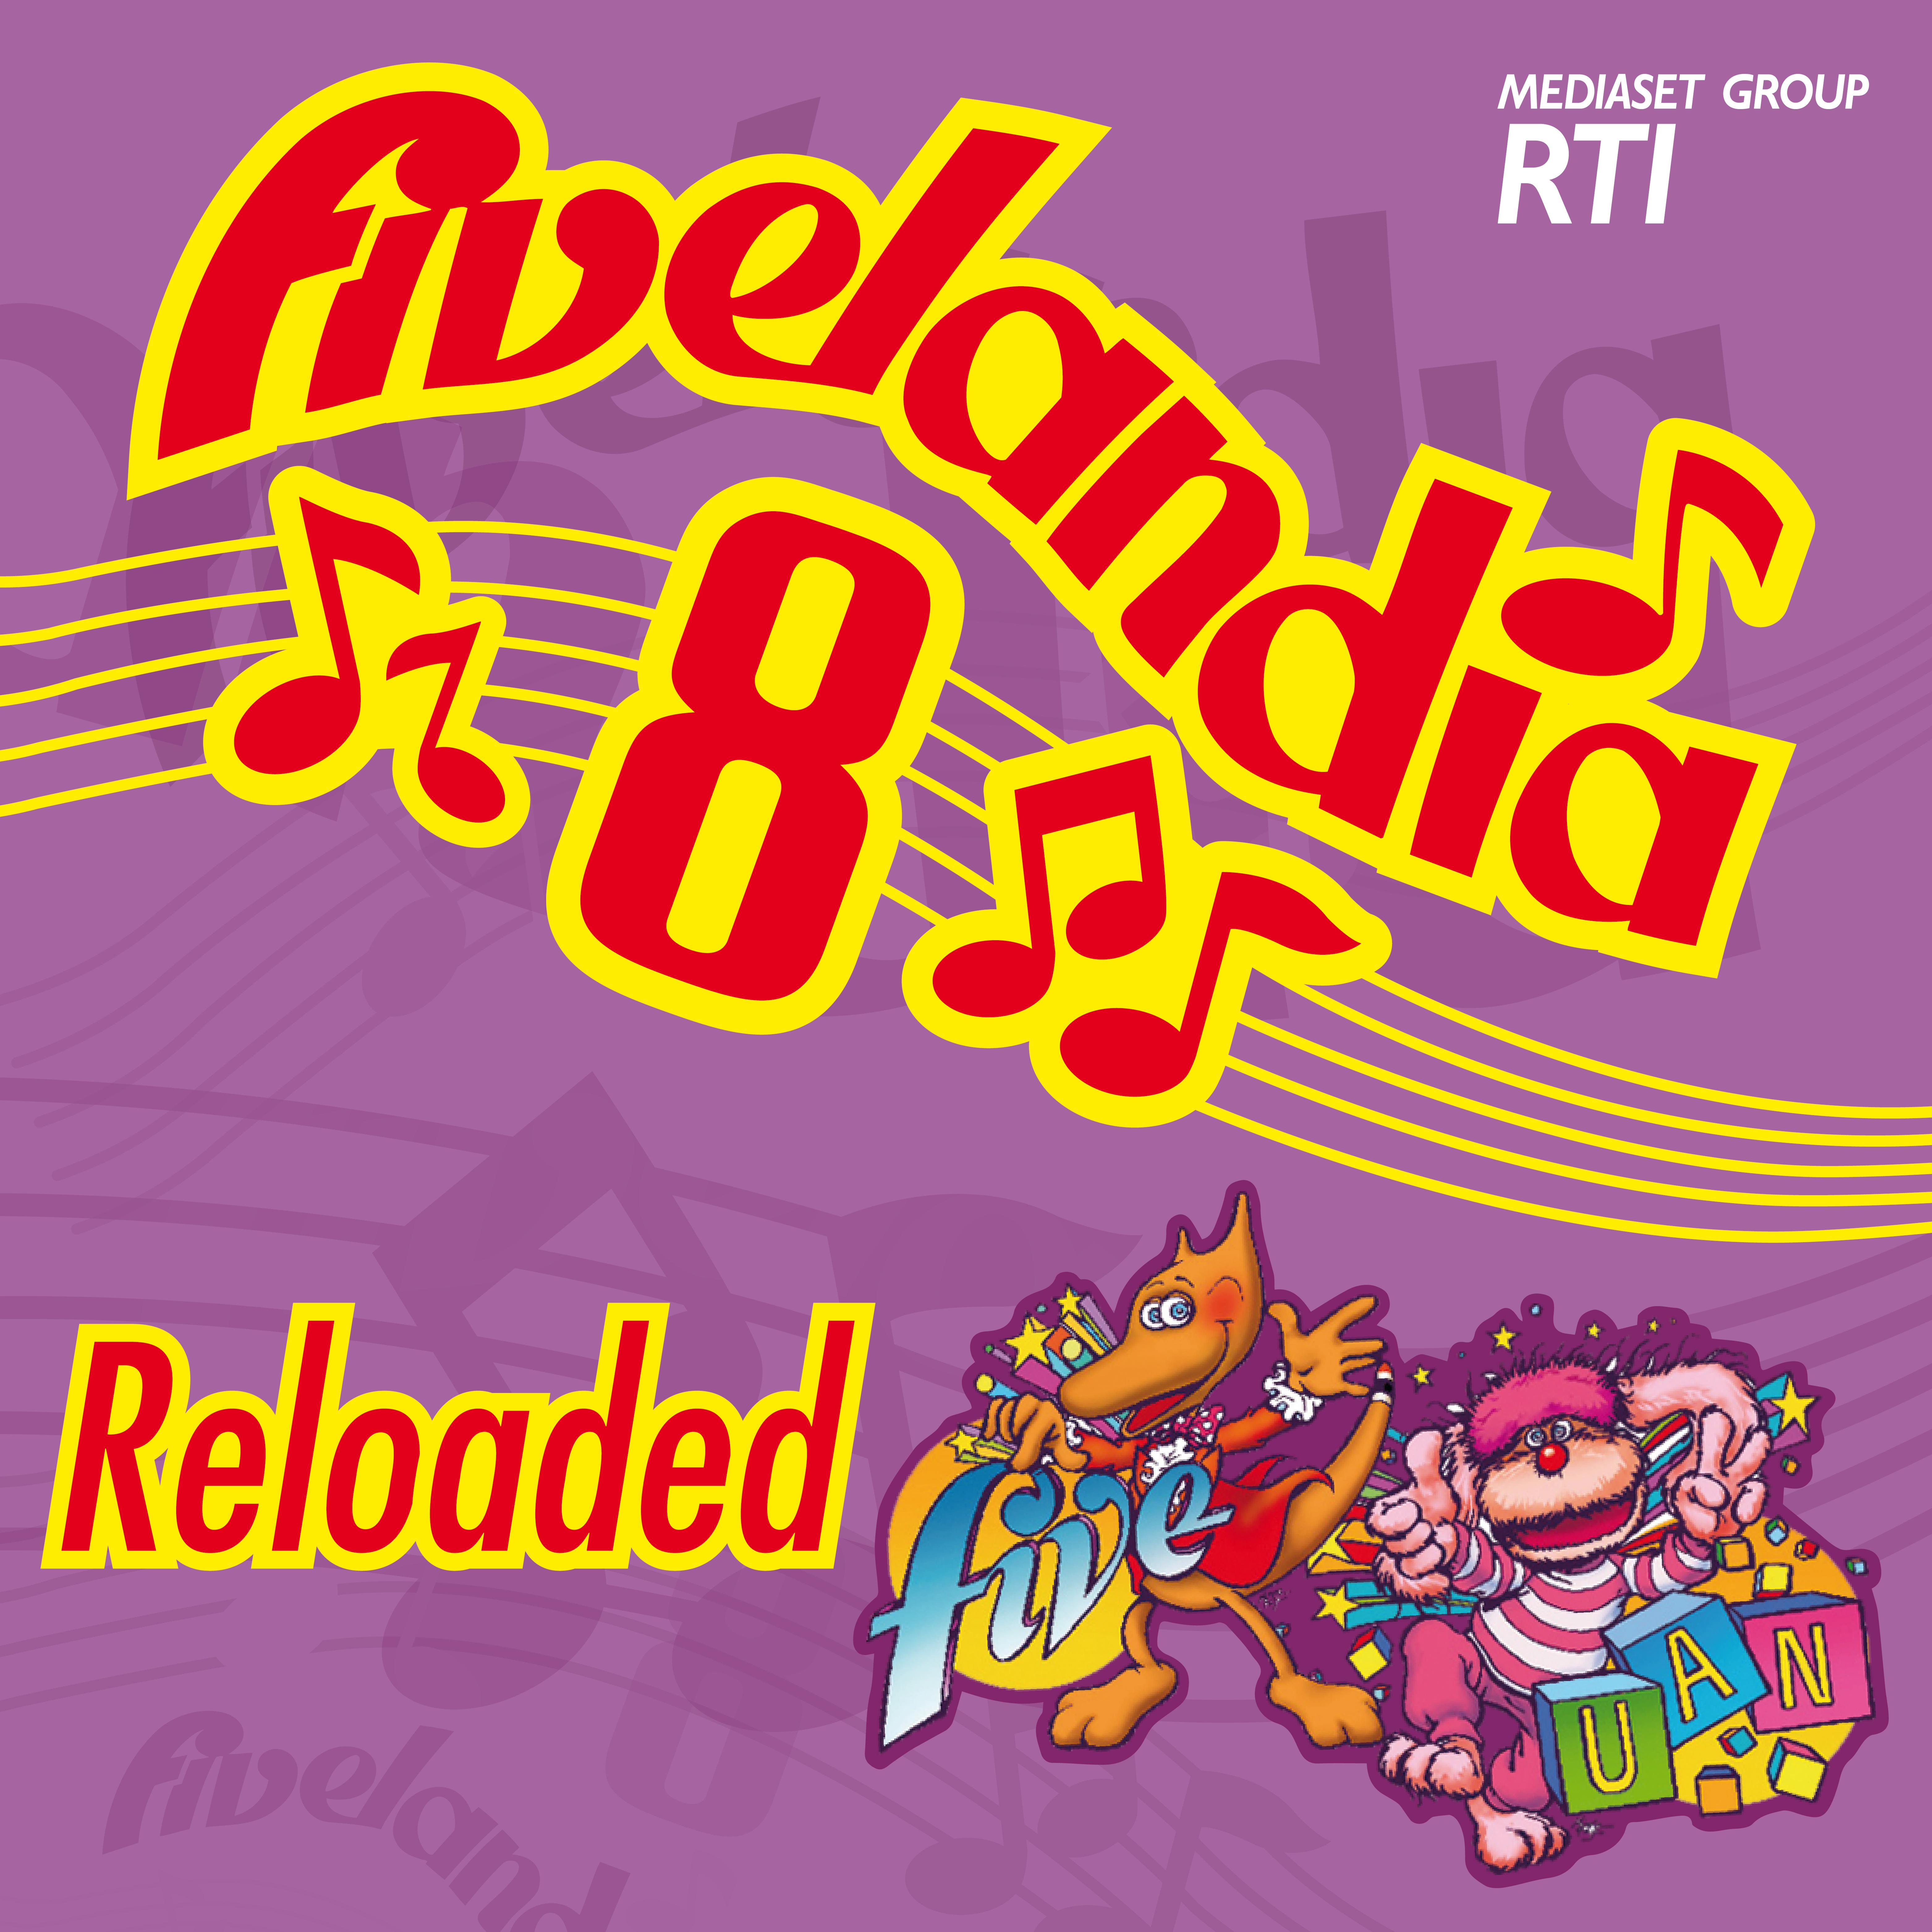 Fivelandia Reloaded - Vol.8